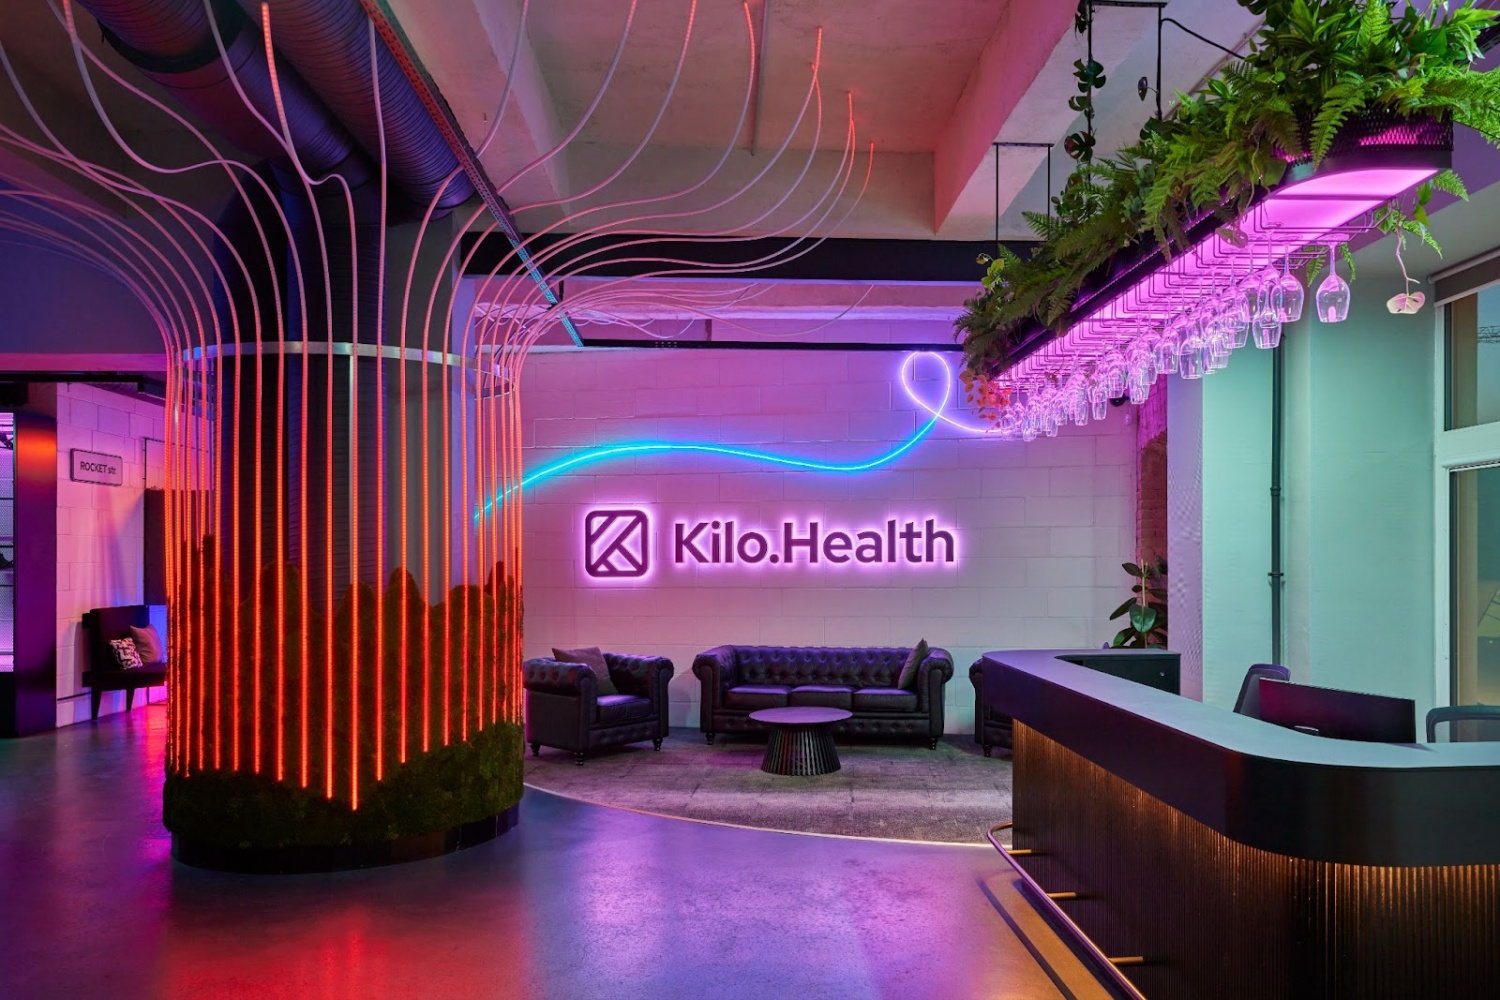 Kilo Health